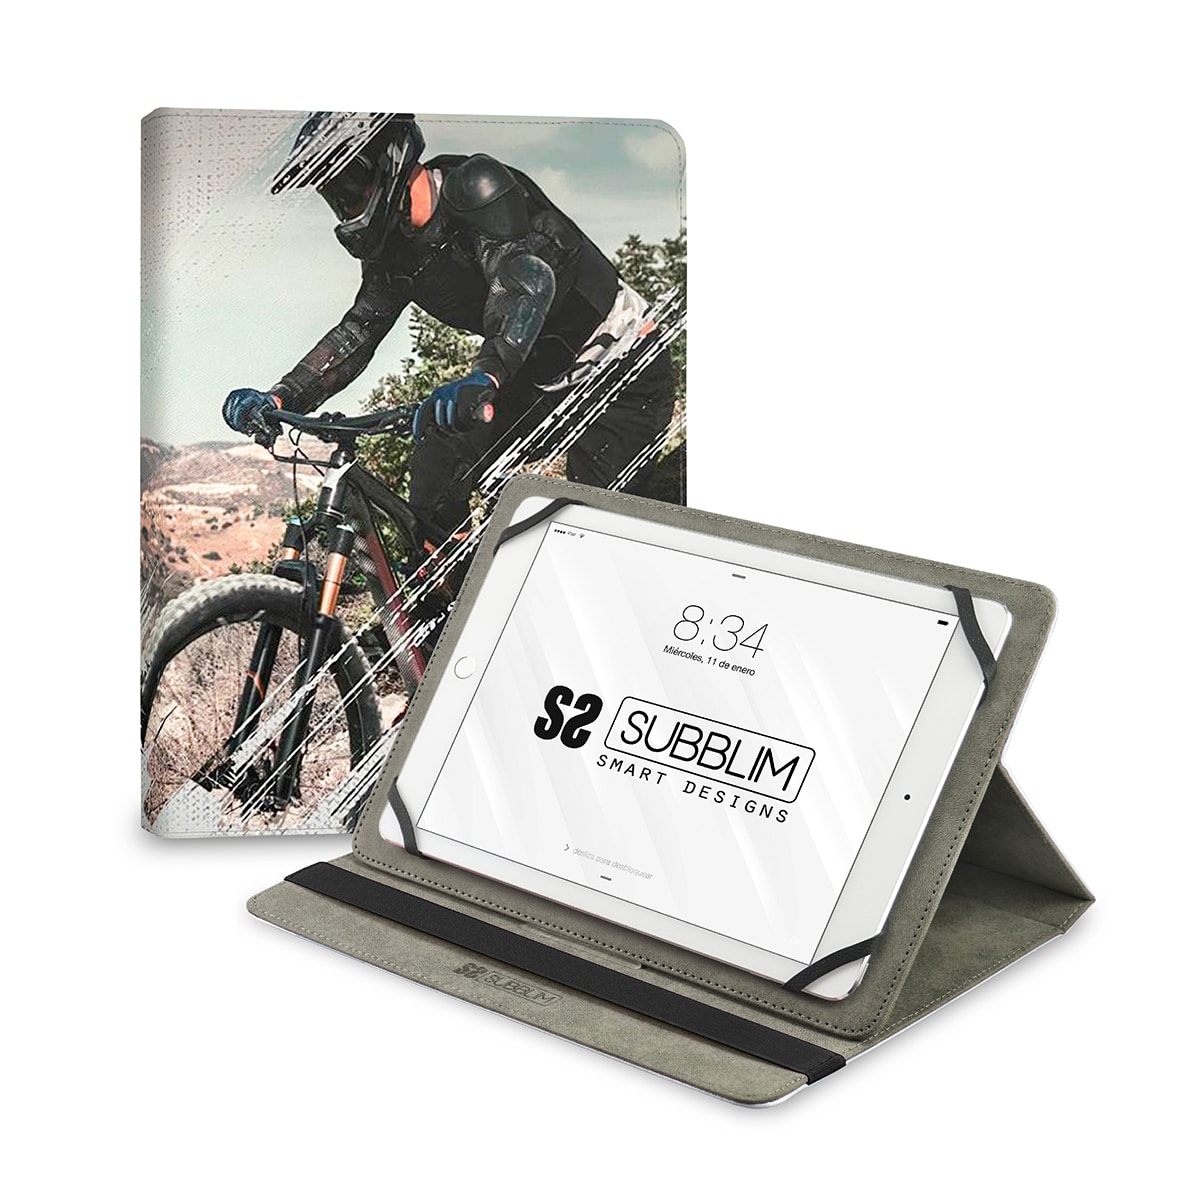 TFD Yosuda - Soporte para tablet compatible con bicicleta, transparente,  portátil, unisex